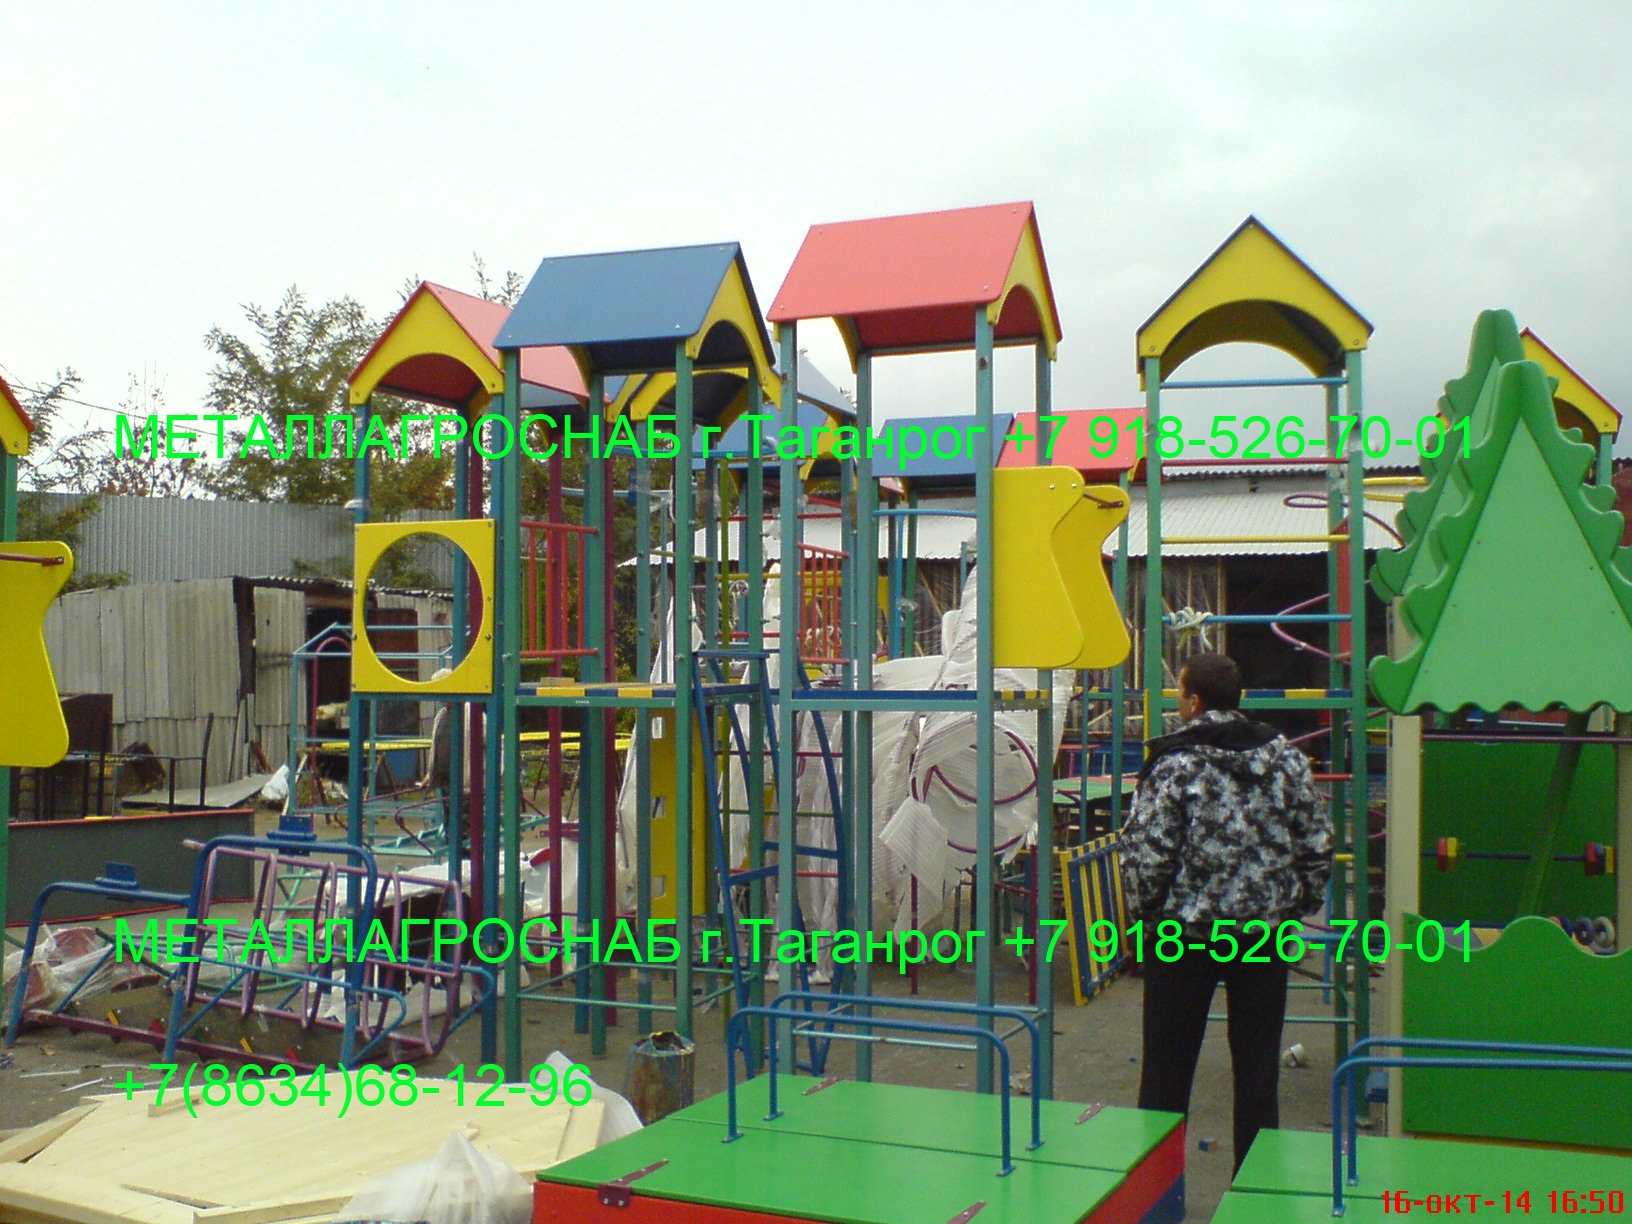 Детский игровой комплекс — для улицы и дачи, купить недорого в Таганроге, Ростове-на-Дону.